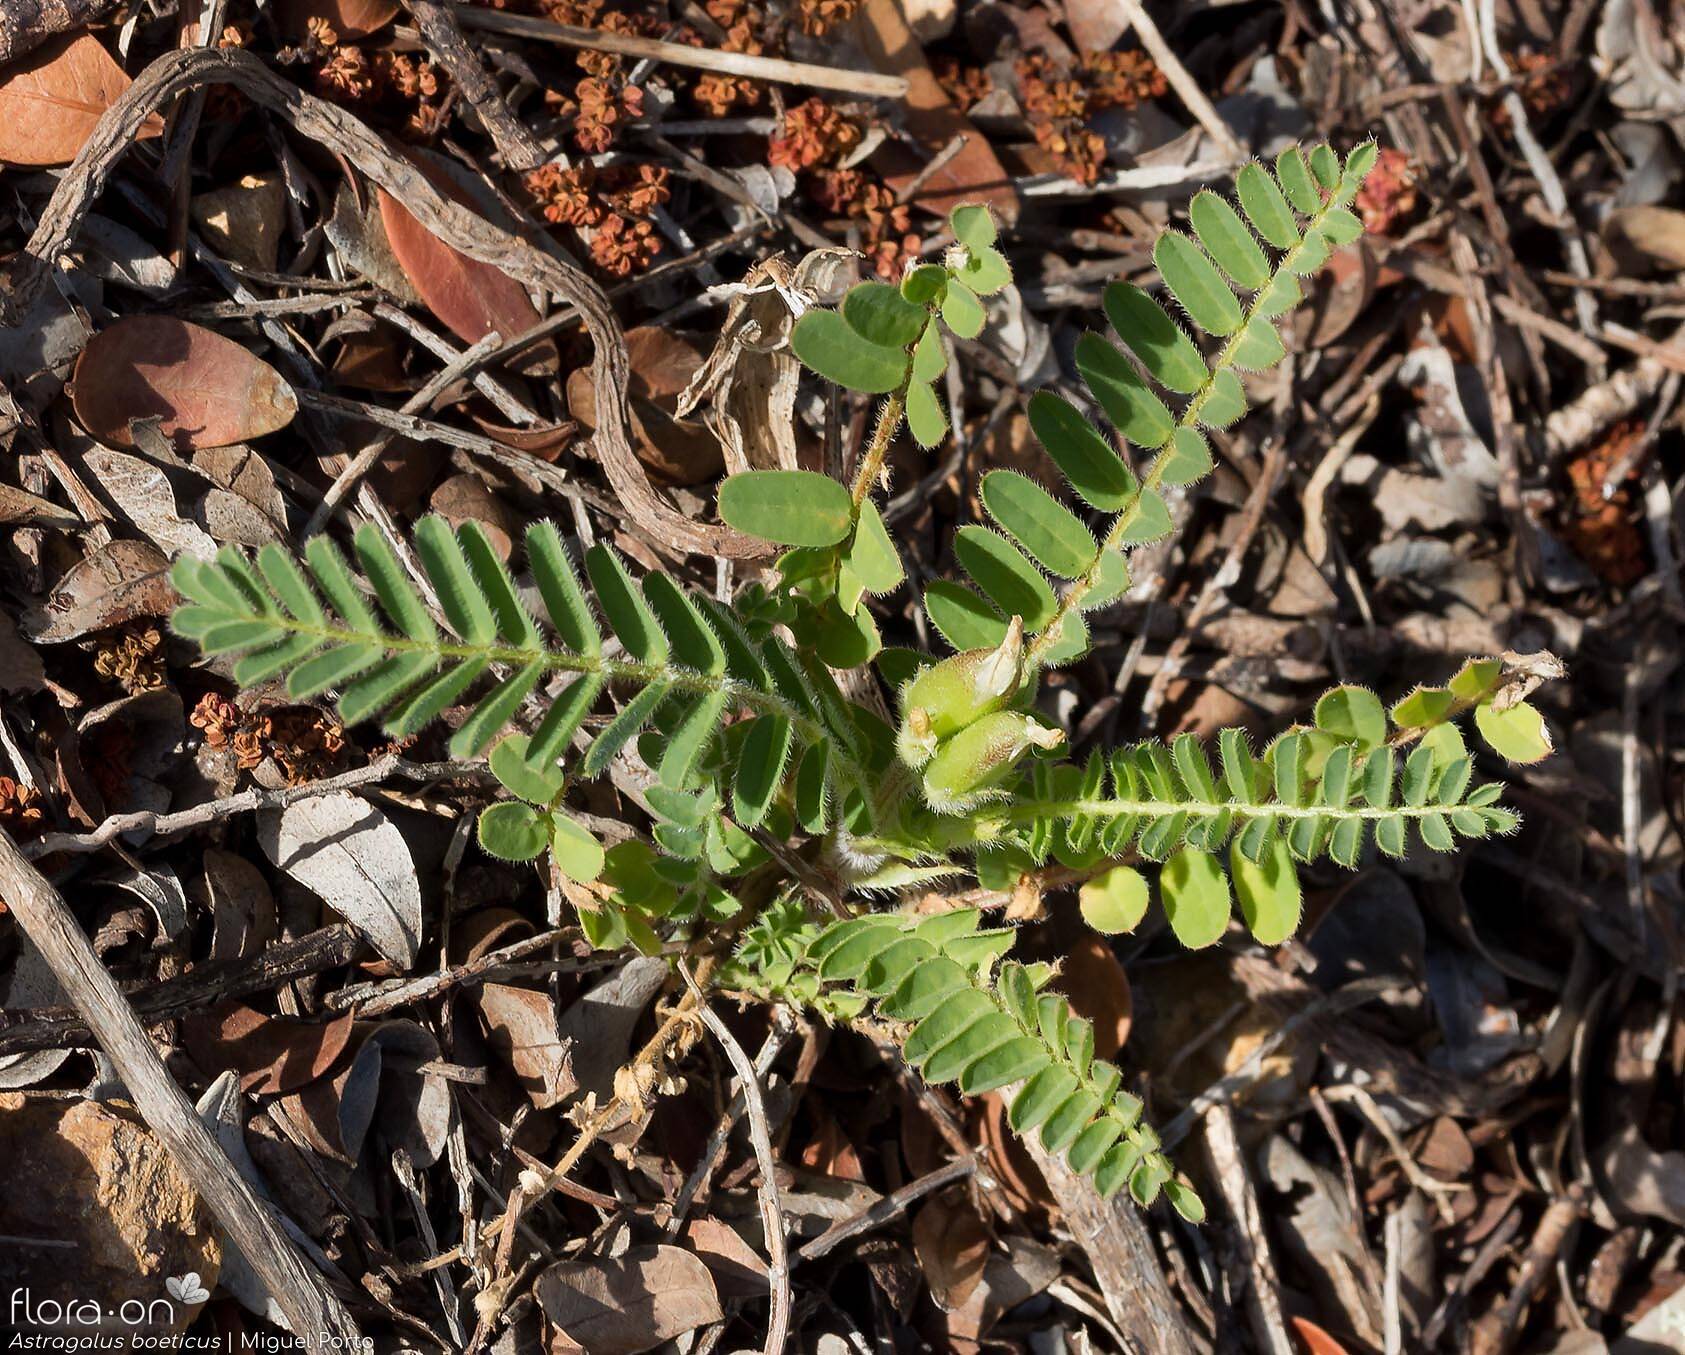 Astragalus boeticus - Hábito | Miguel Porto; CC BY-NC 4.0